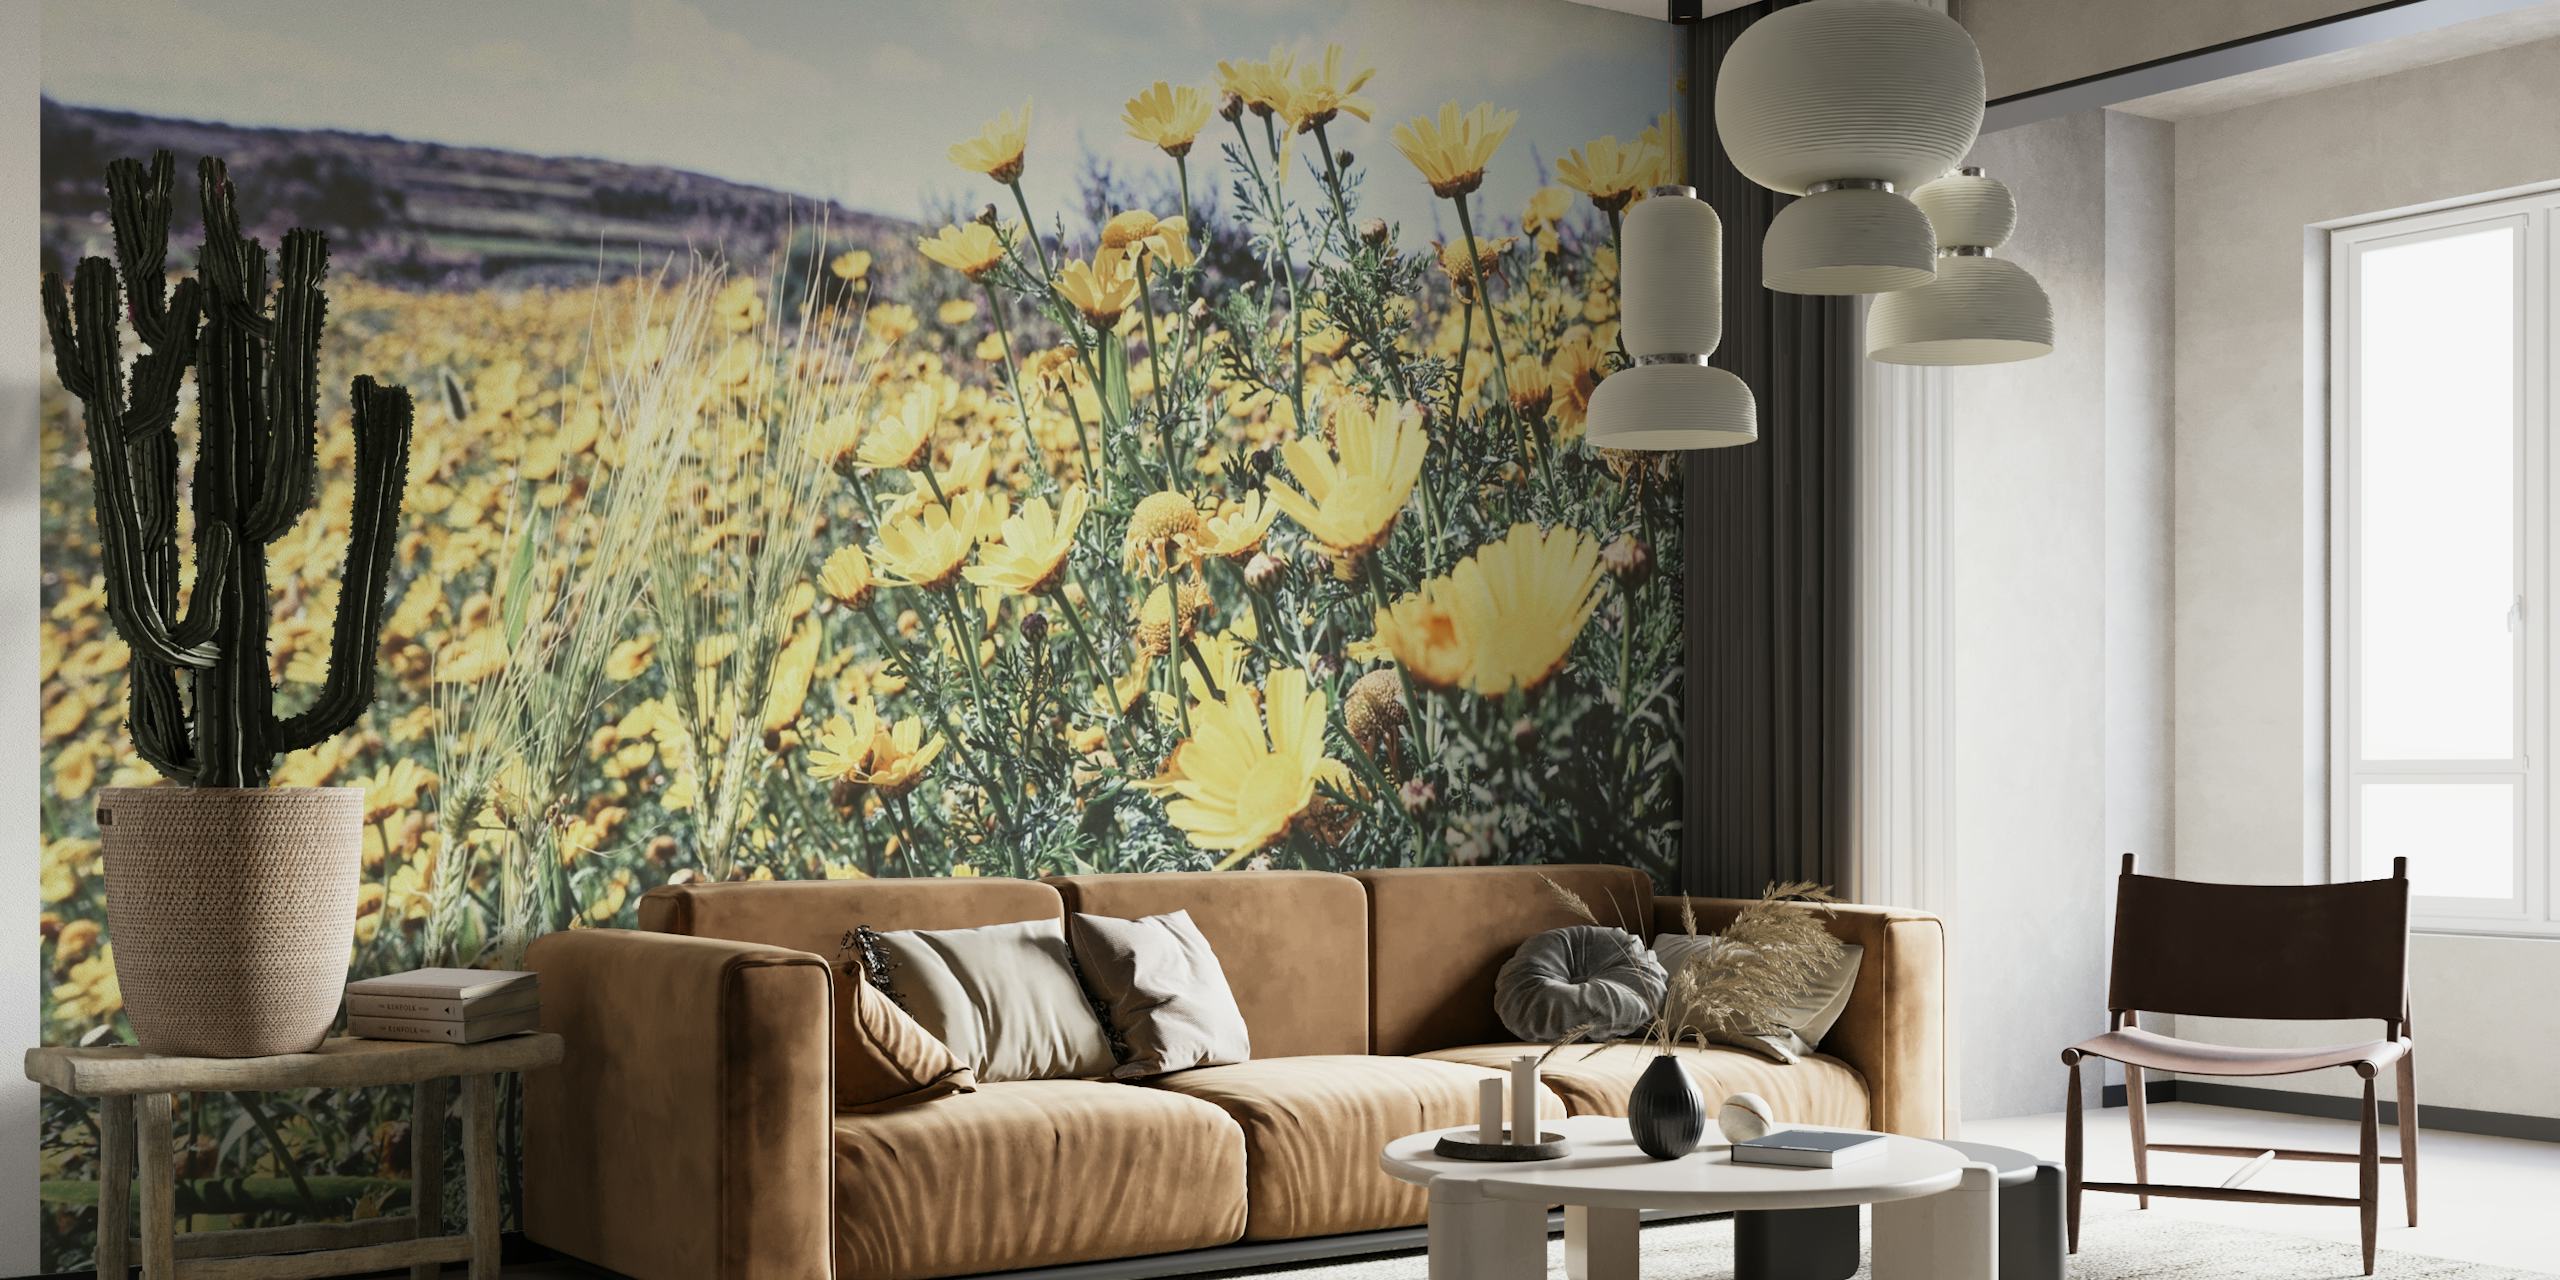 Zidna slika Soft Flower Field sa žutim poljskim cvijećem i sunčanom livadom